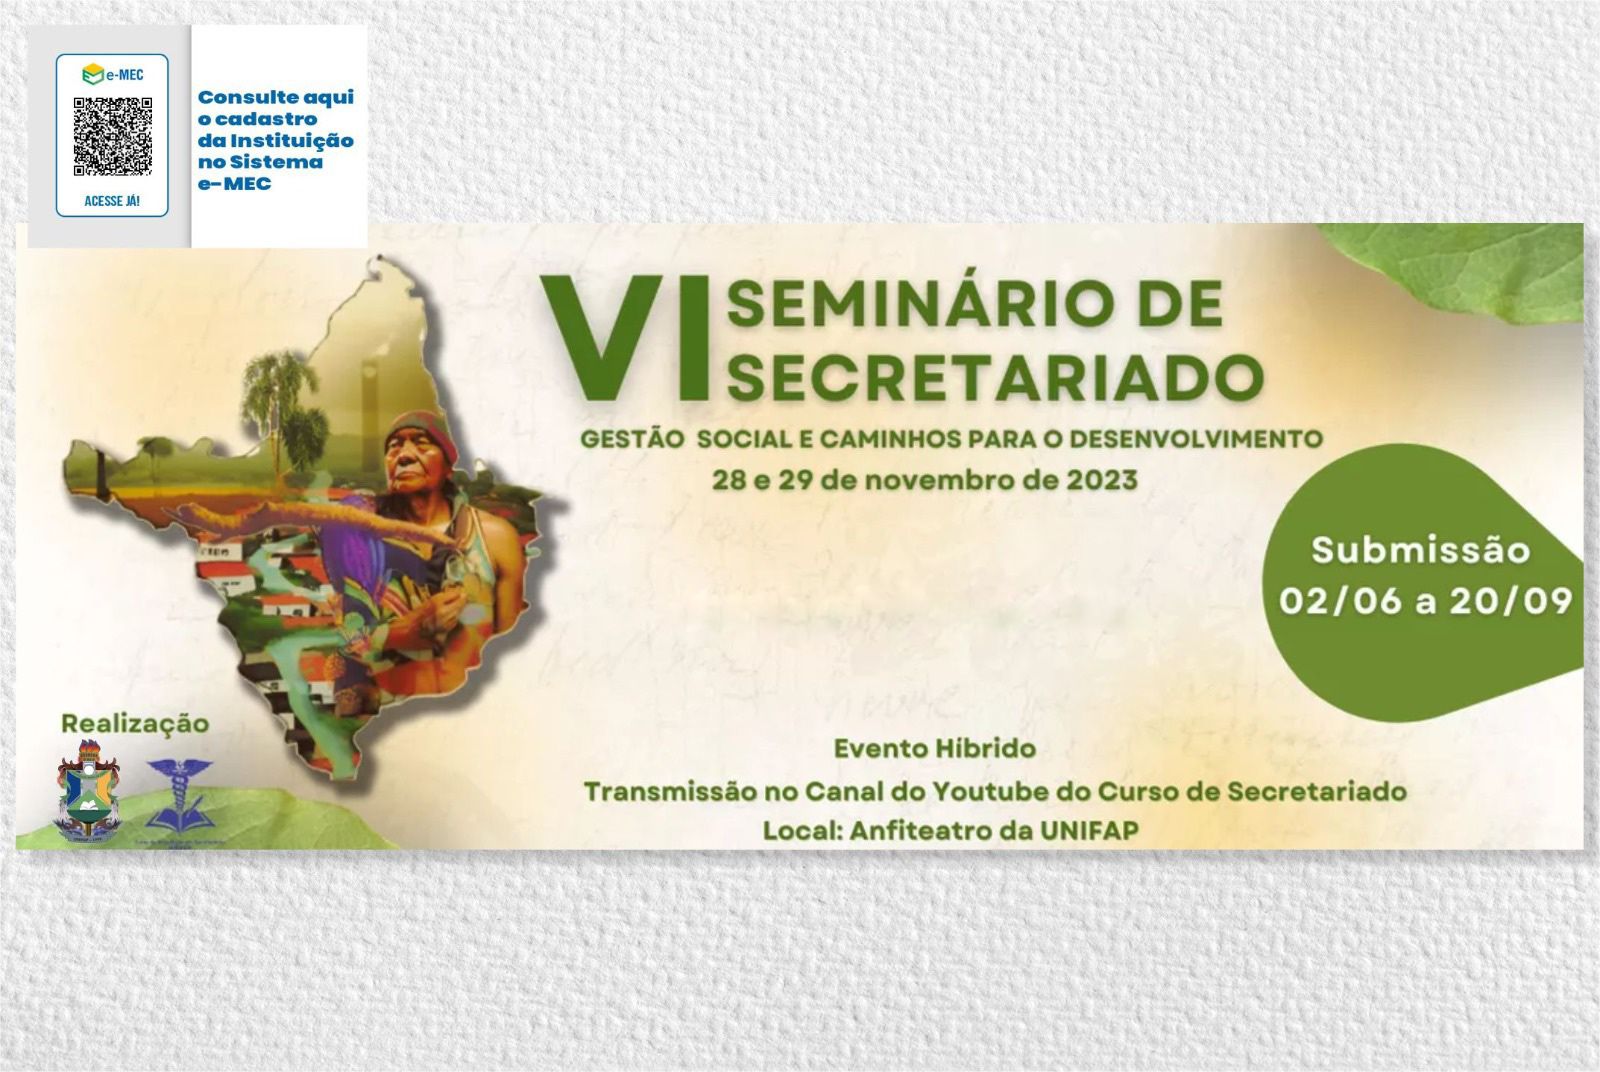 Sexta edição do Seminário de Secretariado debate gestão social e desenvolvimento